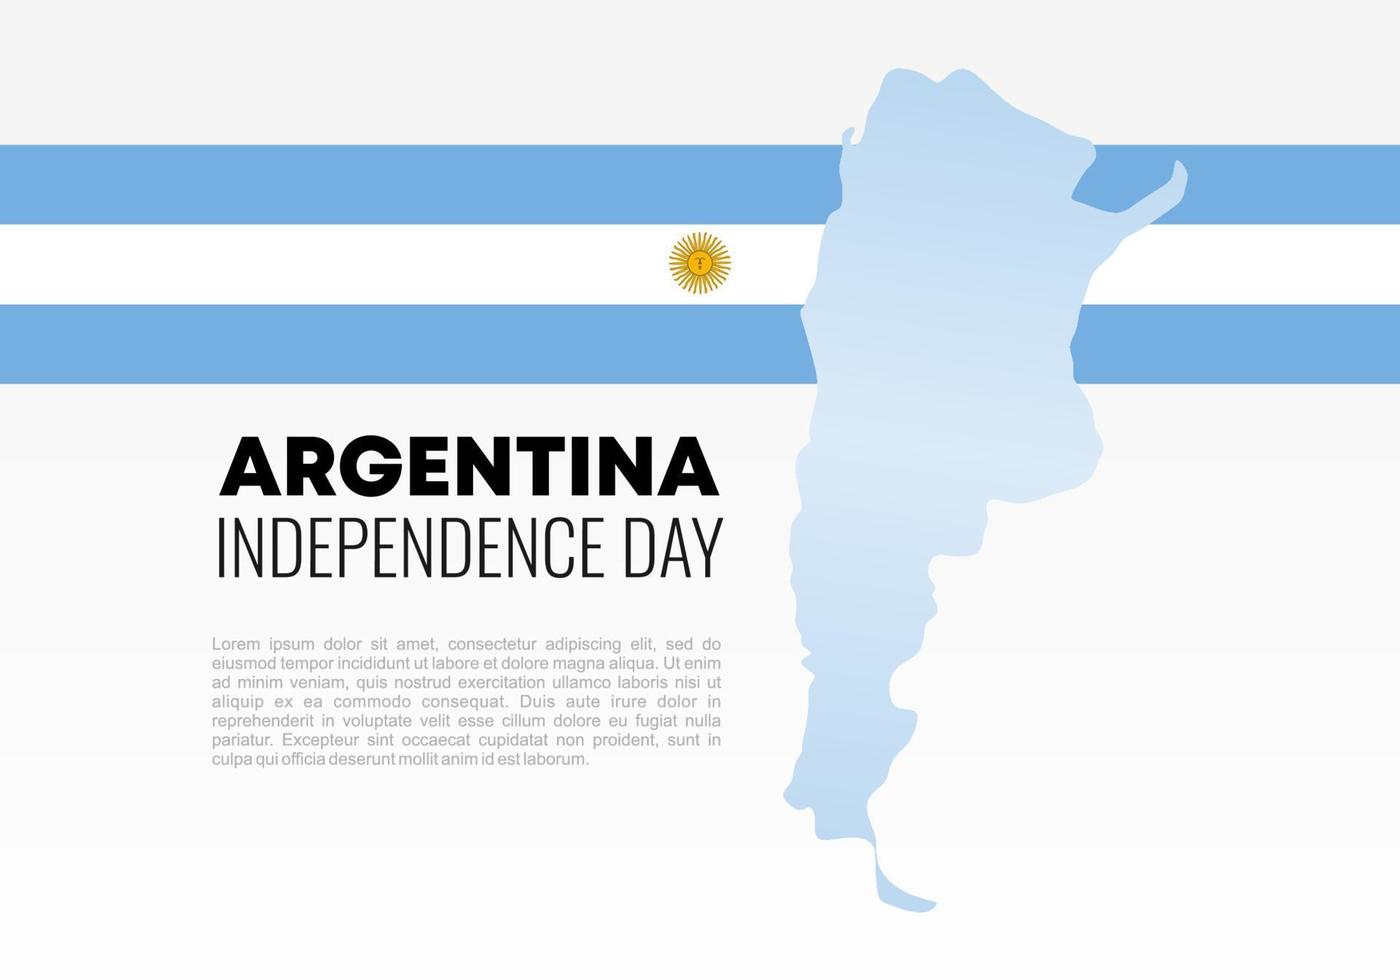 Argentijnse onafhankelijkheidsdag nationale viering op 9 juli. vector